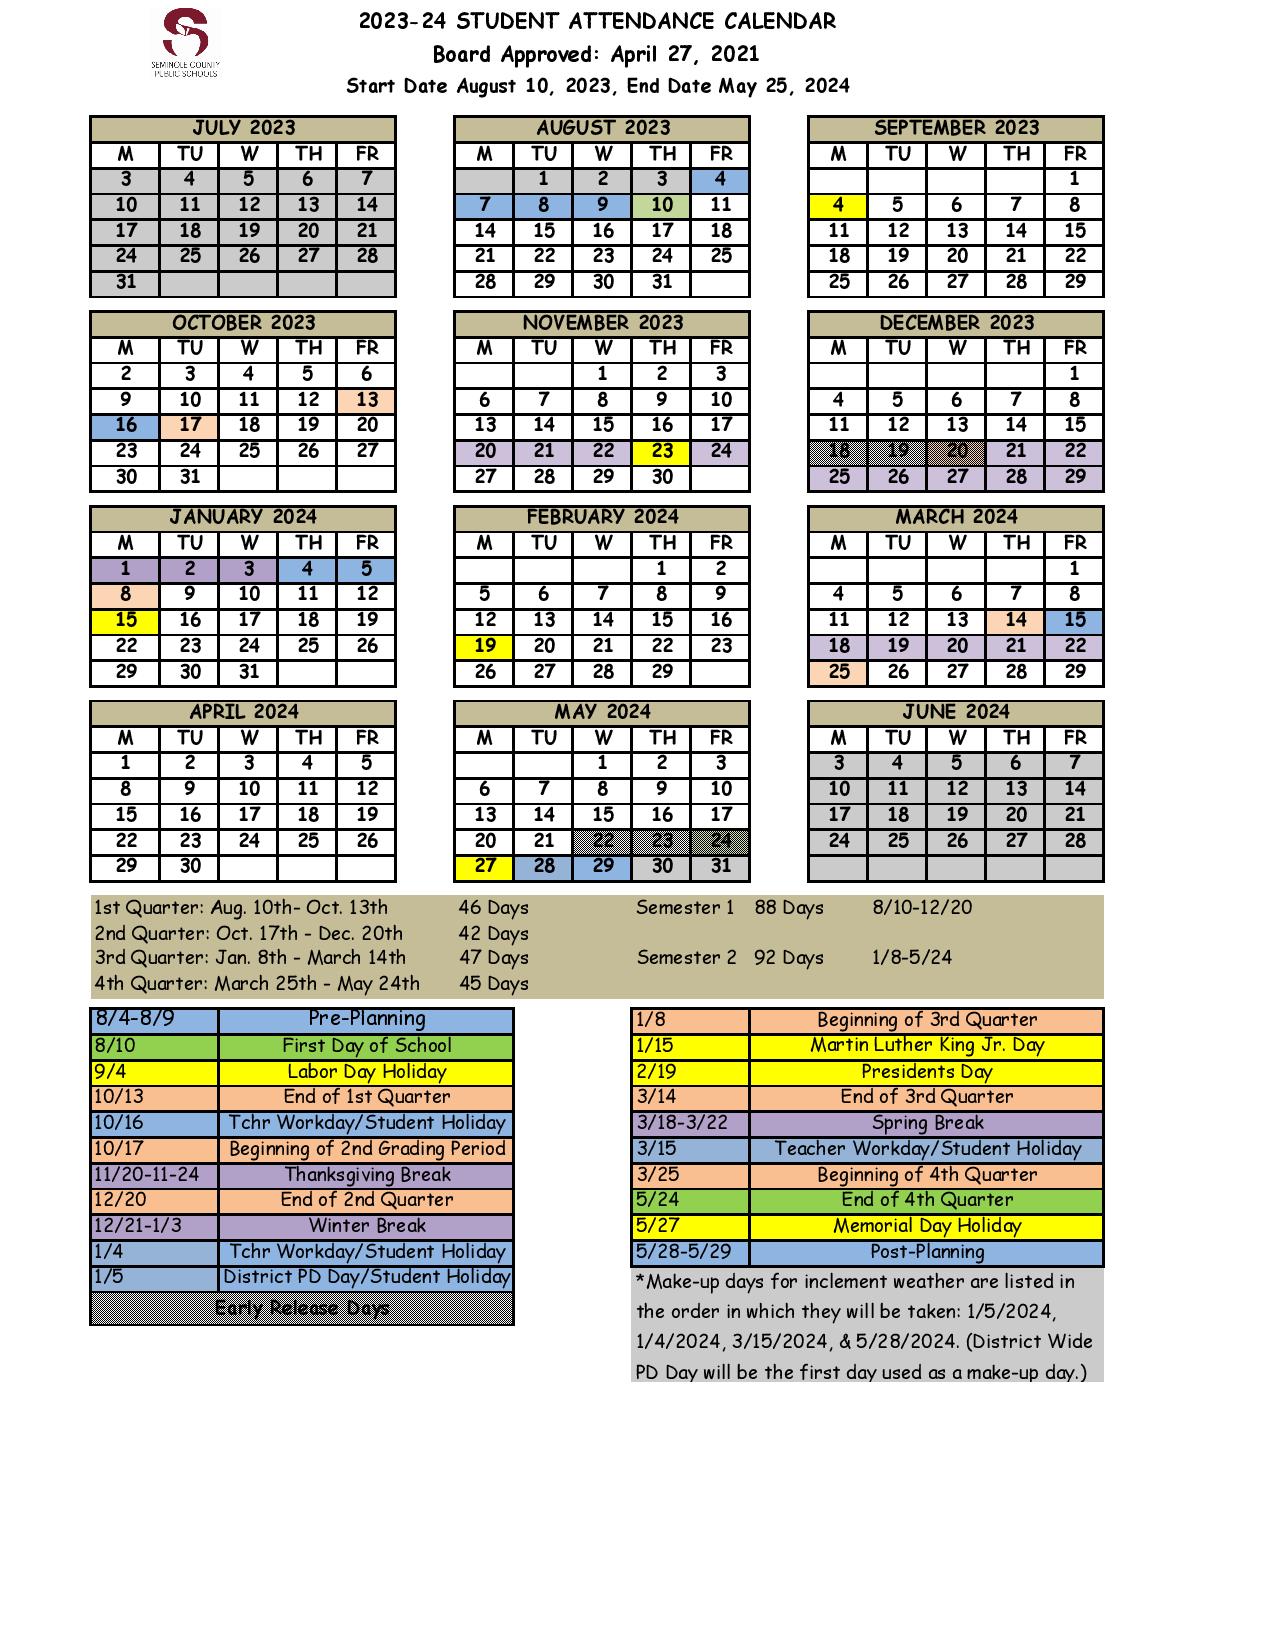 Seminole County Public Schools Calendar 2023 2024